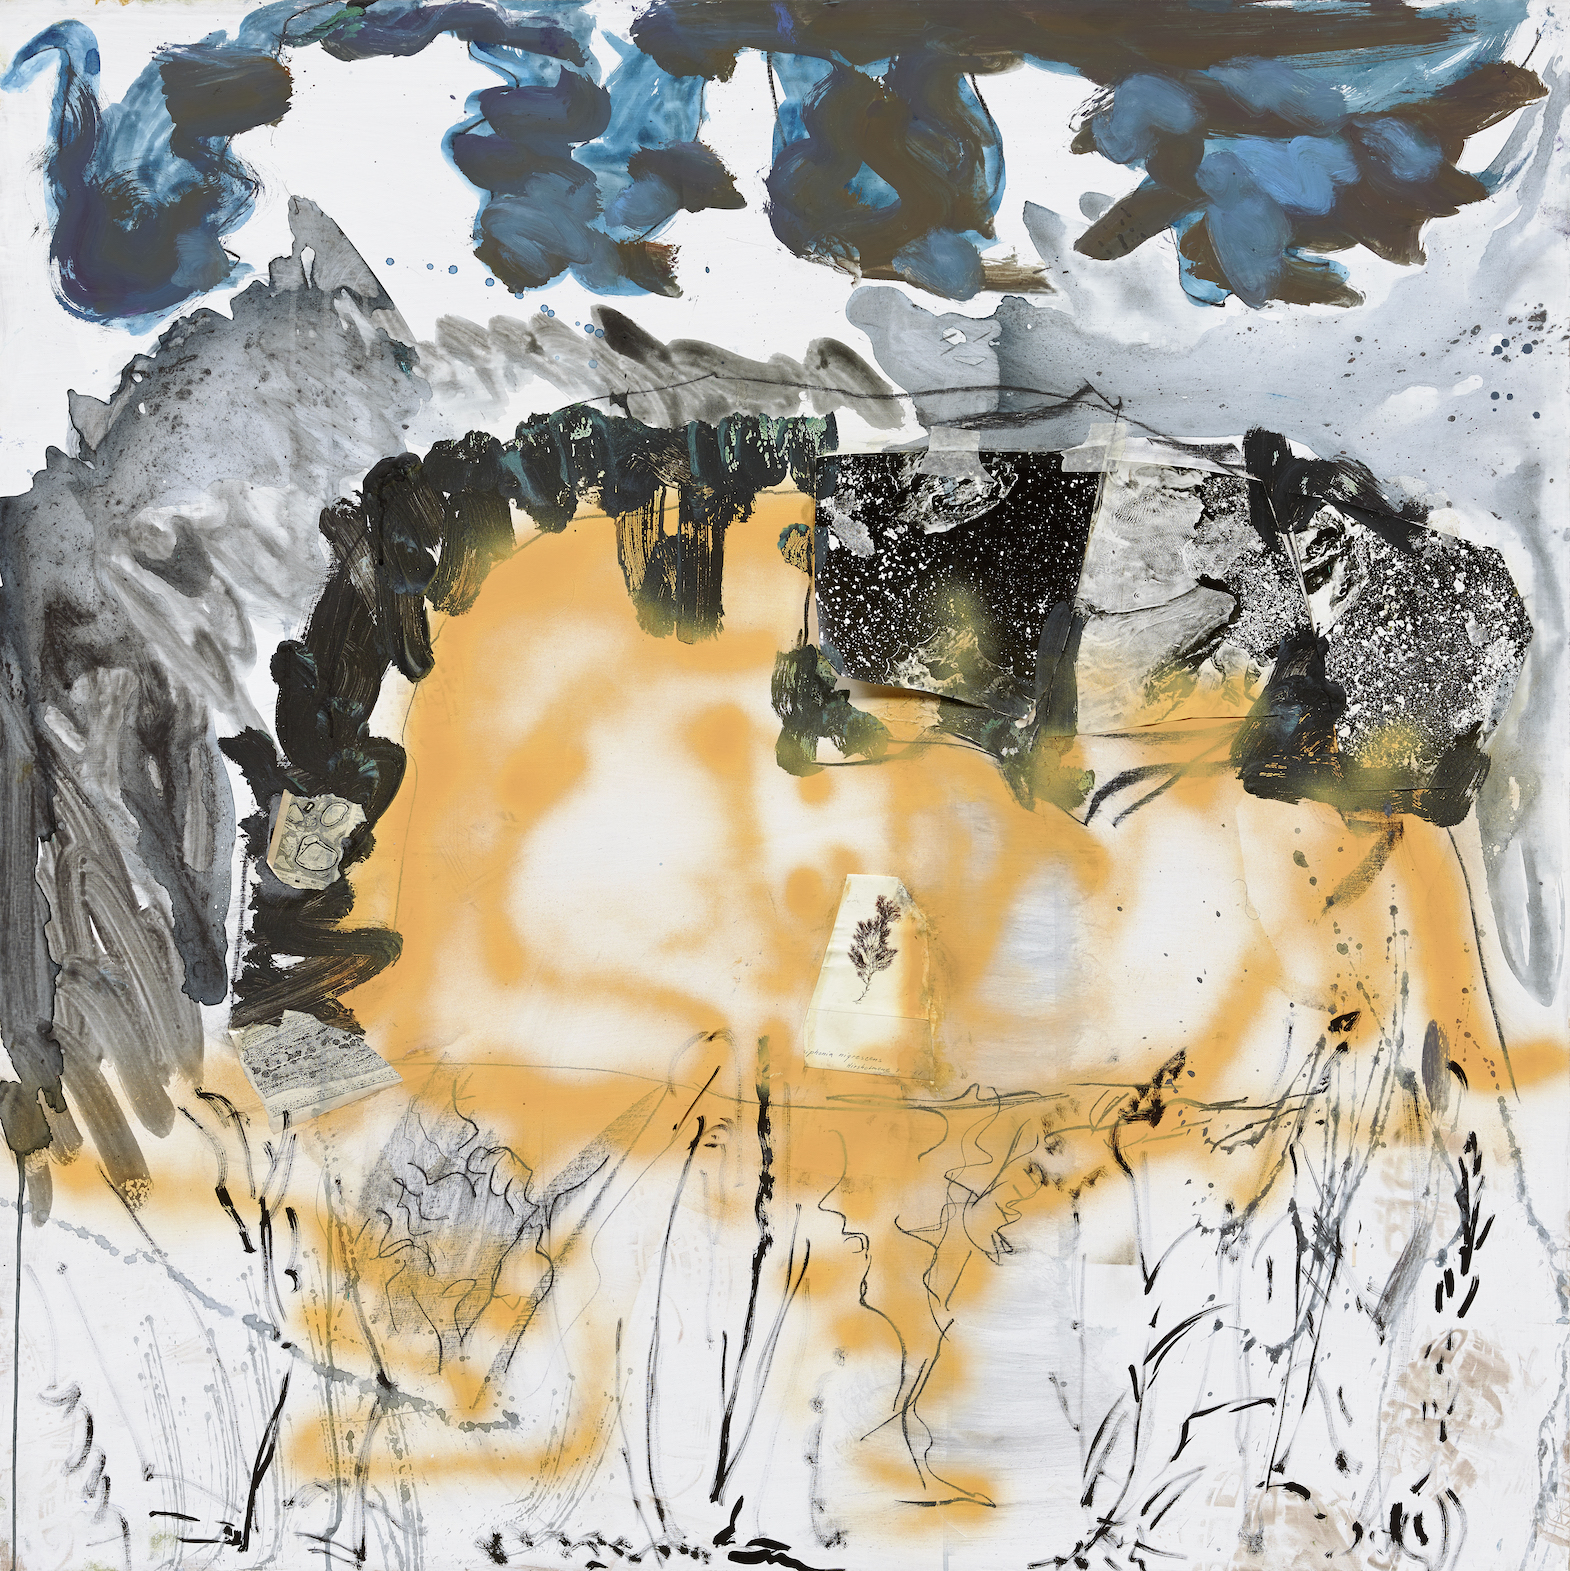 Reinhard Pods, Ohne Titel, 2005, Oil on canvas, 230.6 x 164.8 cm